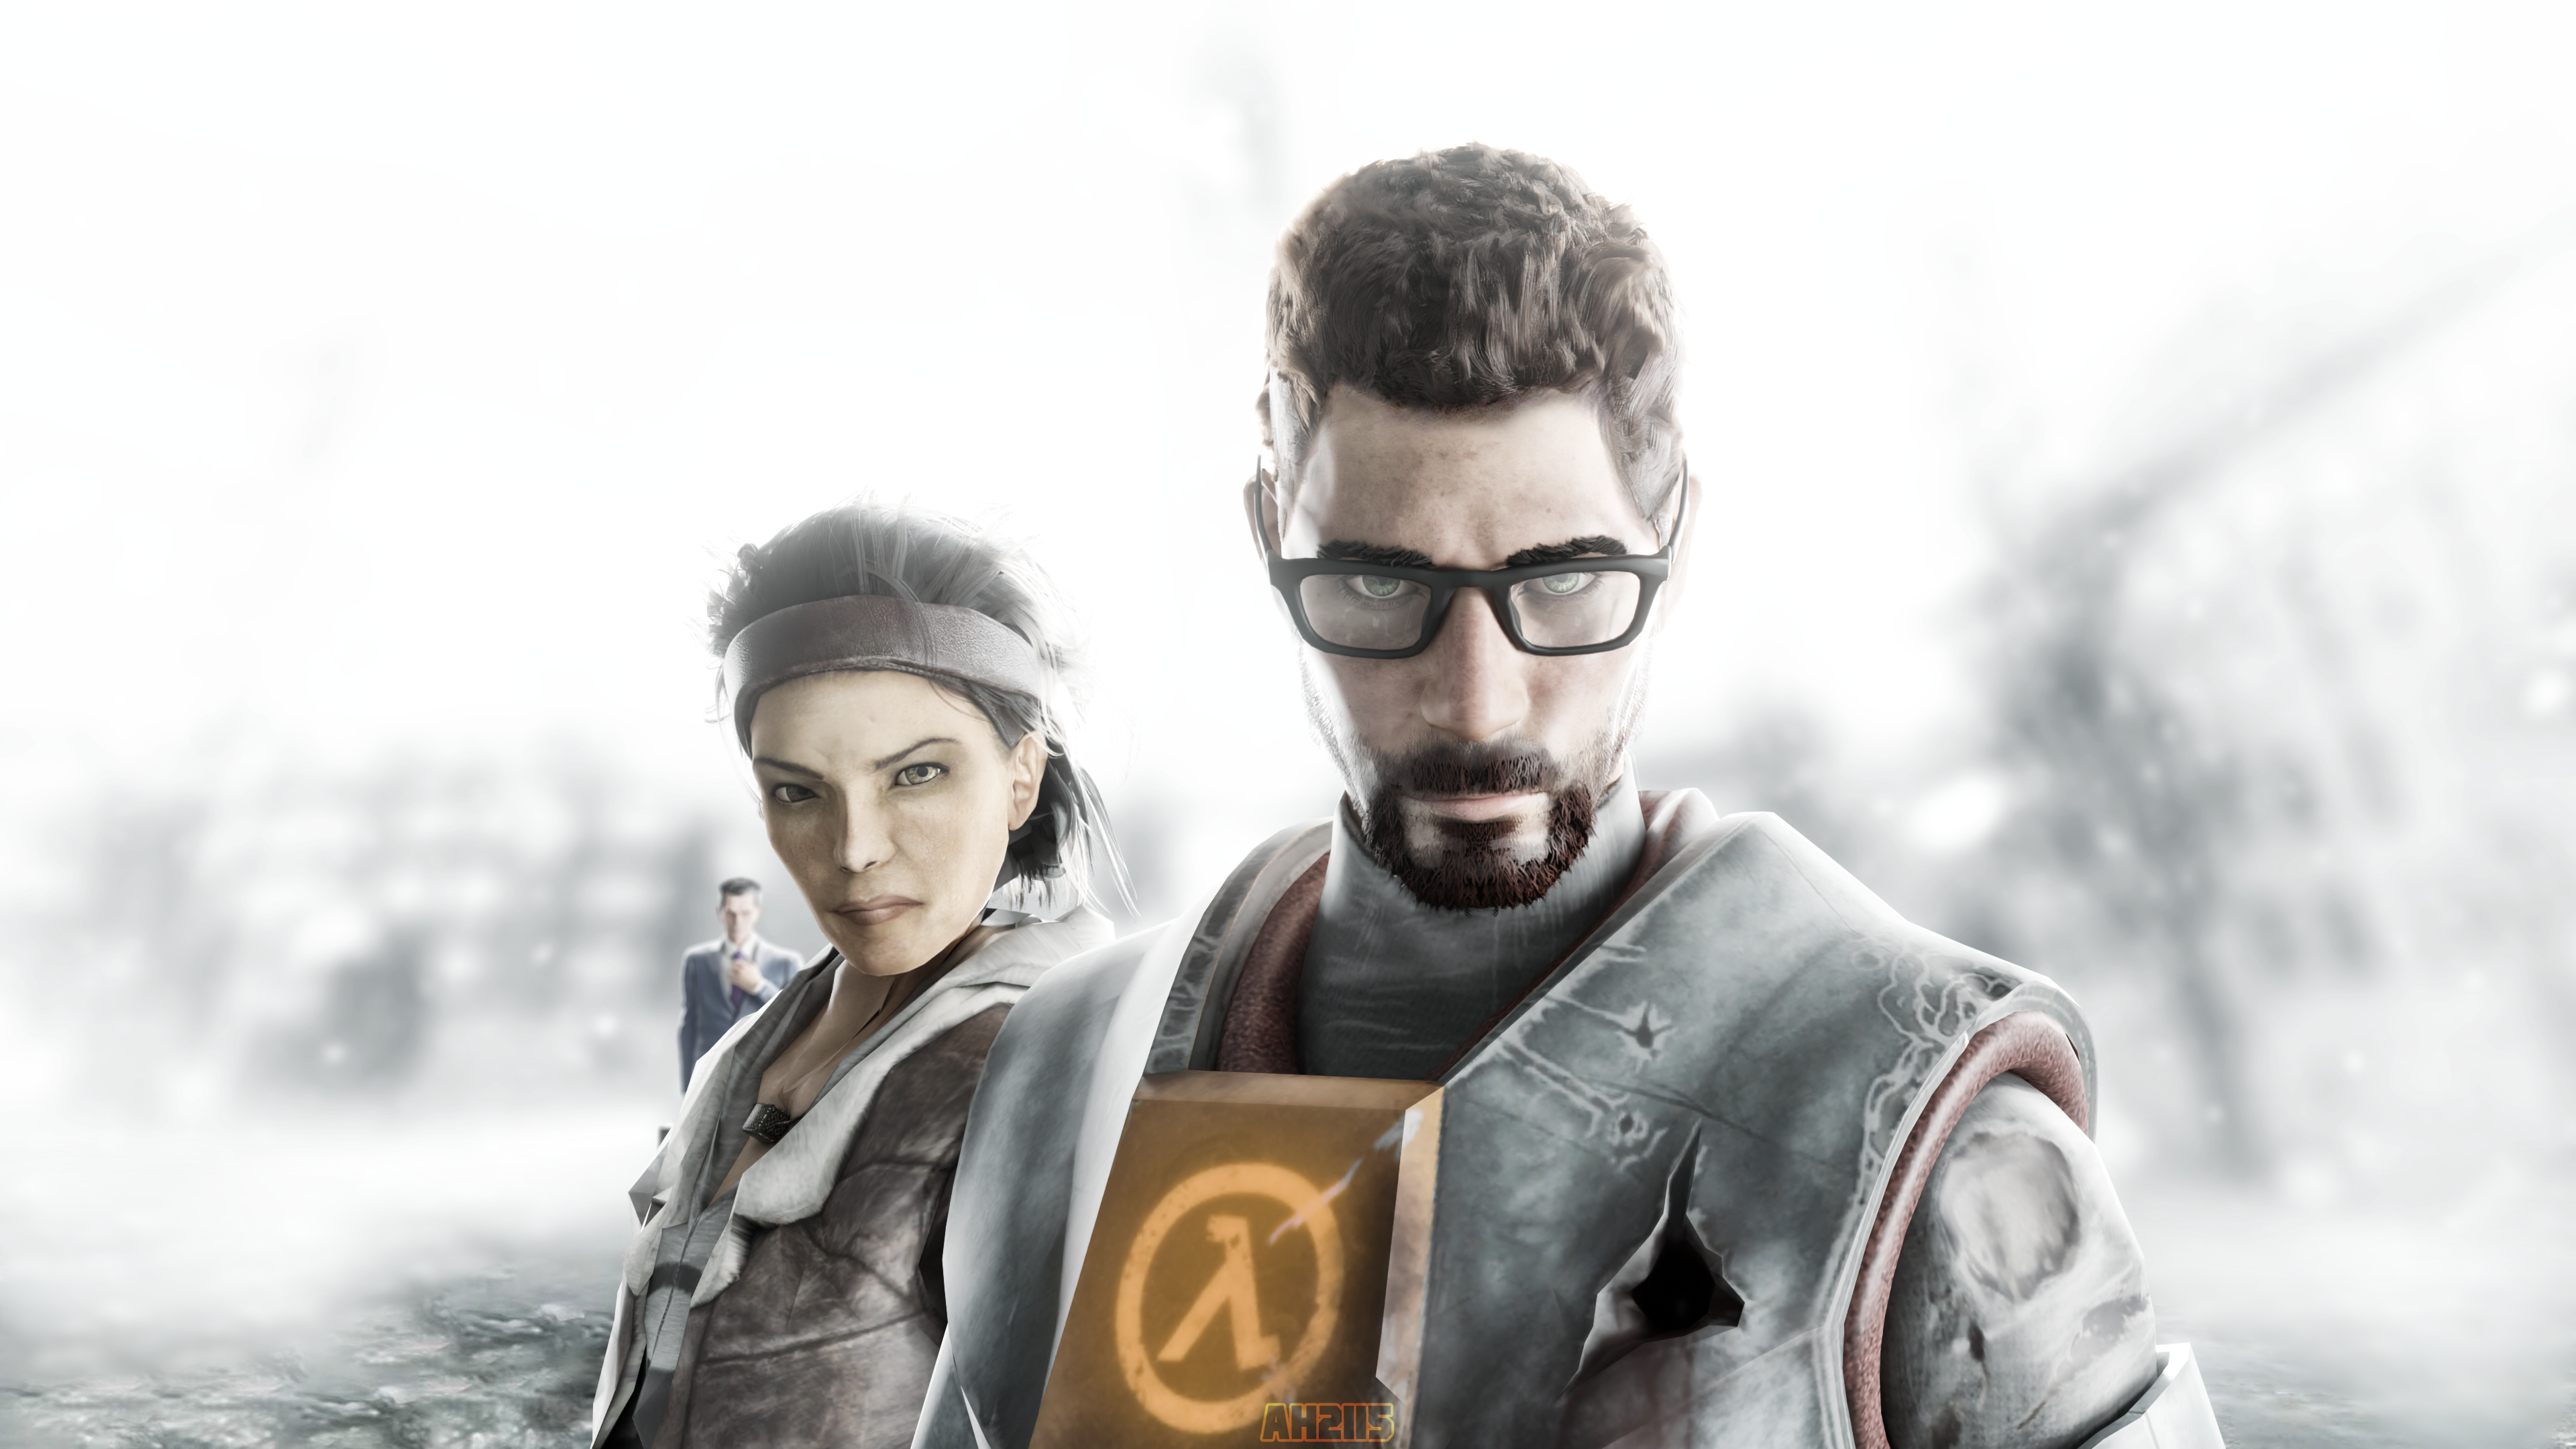 Half-Life 2 Alyx and Dr. Kleiner by edwardzou on DeviantArt